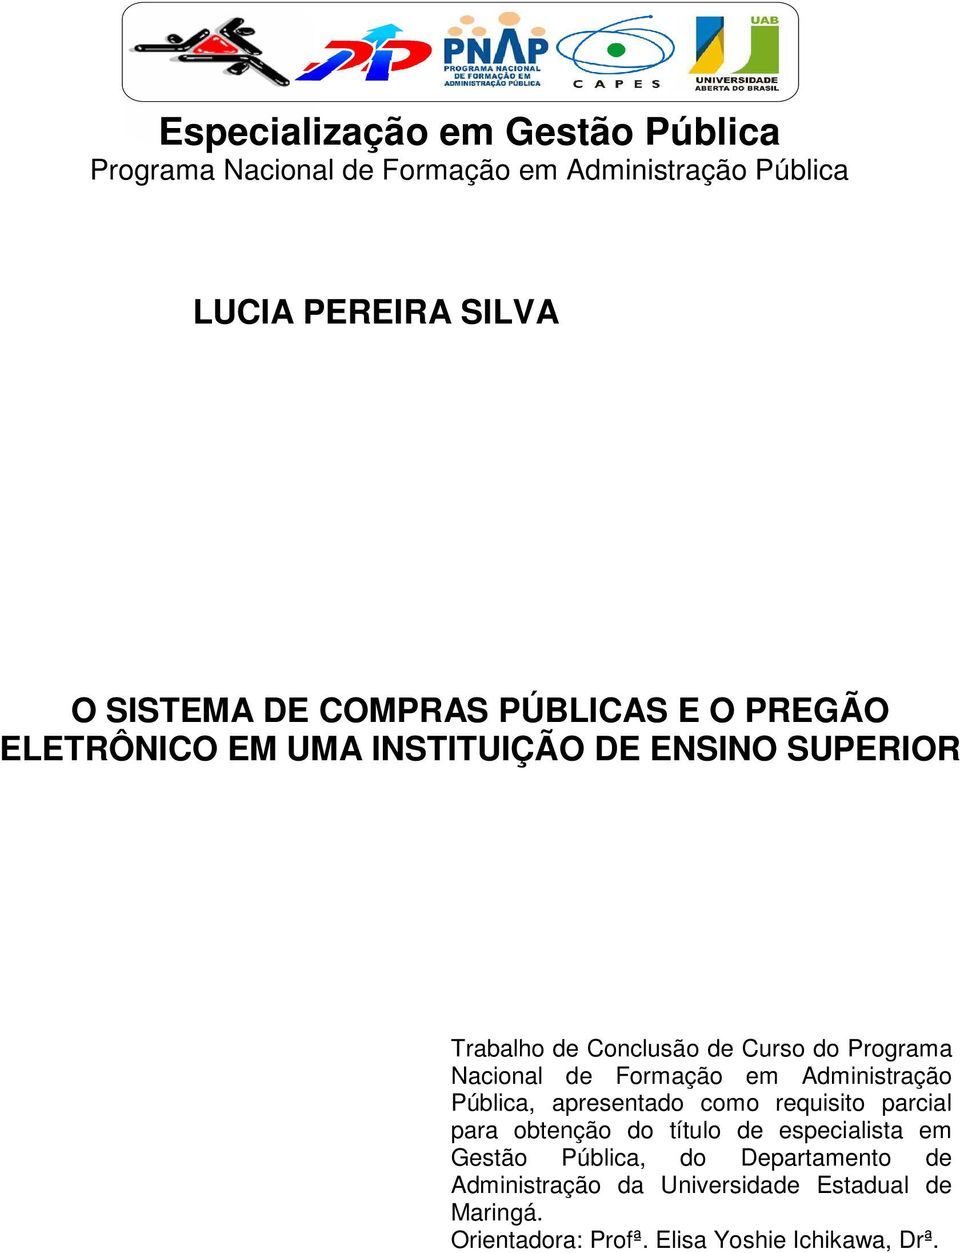 Nacional de Formação em Administração Pública, apresentado como requisito parcial para obtenção do título de especialista em